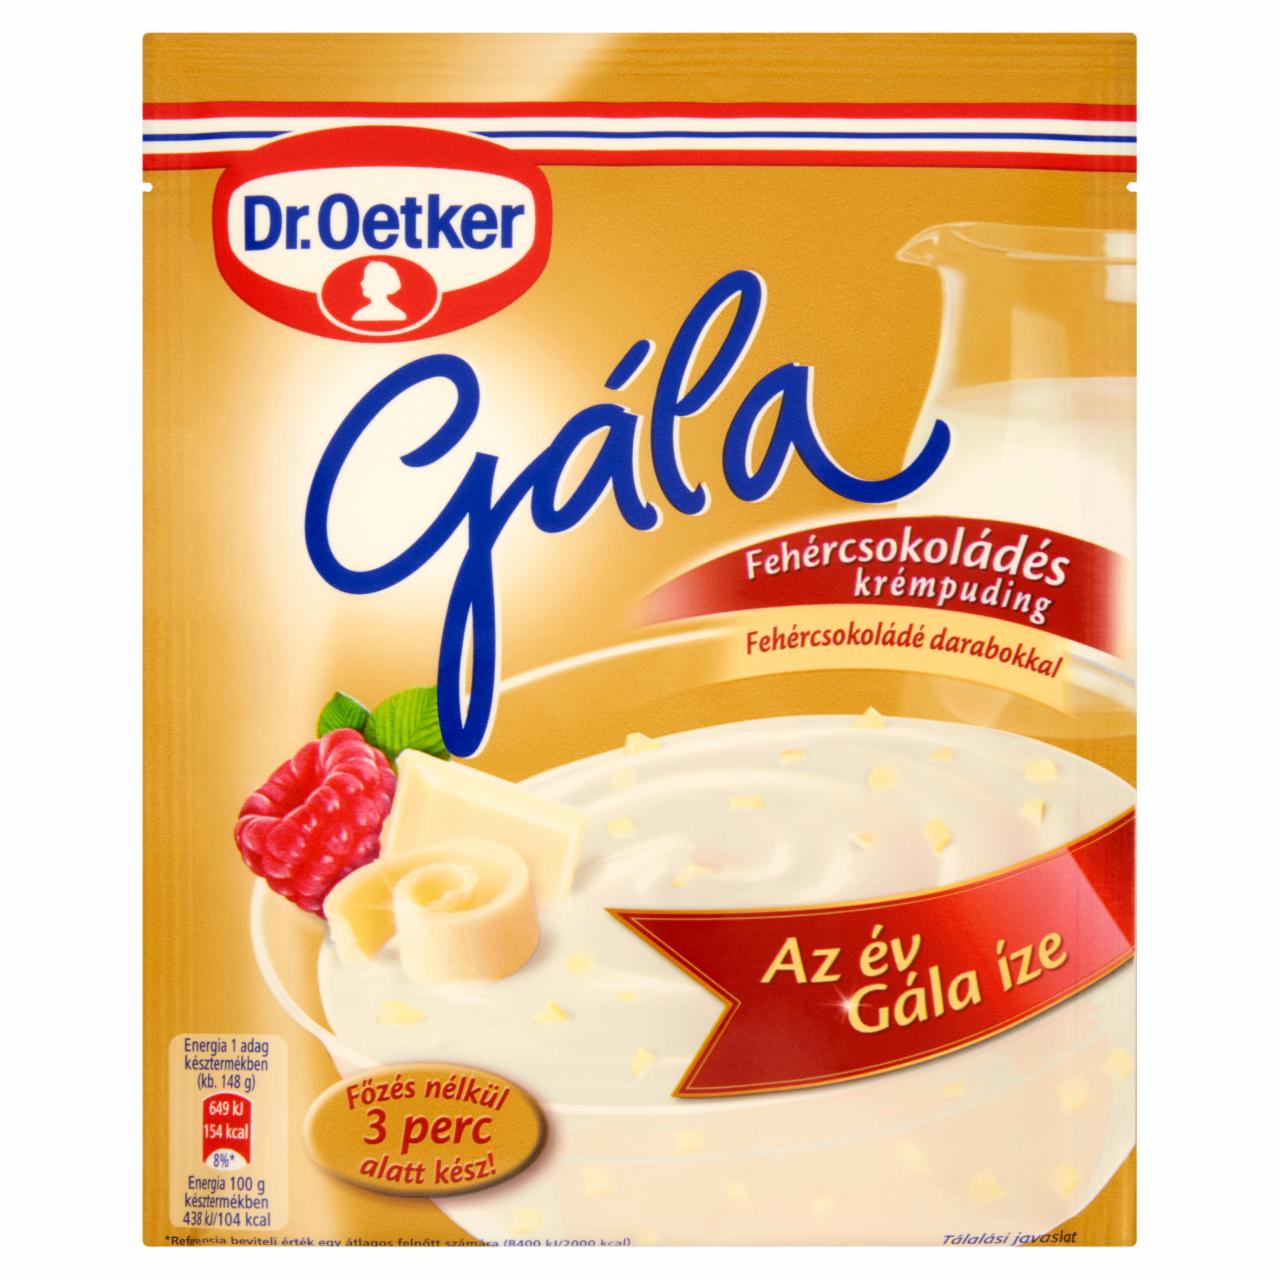 Képek - Dr. Oetker Gála fehércsokoládés krémpudingpor fehércsokoládé darabokkal 95 g